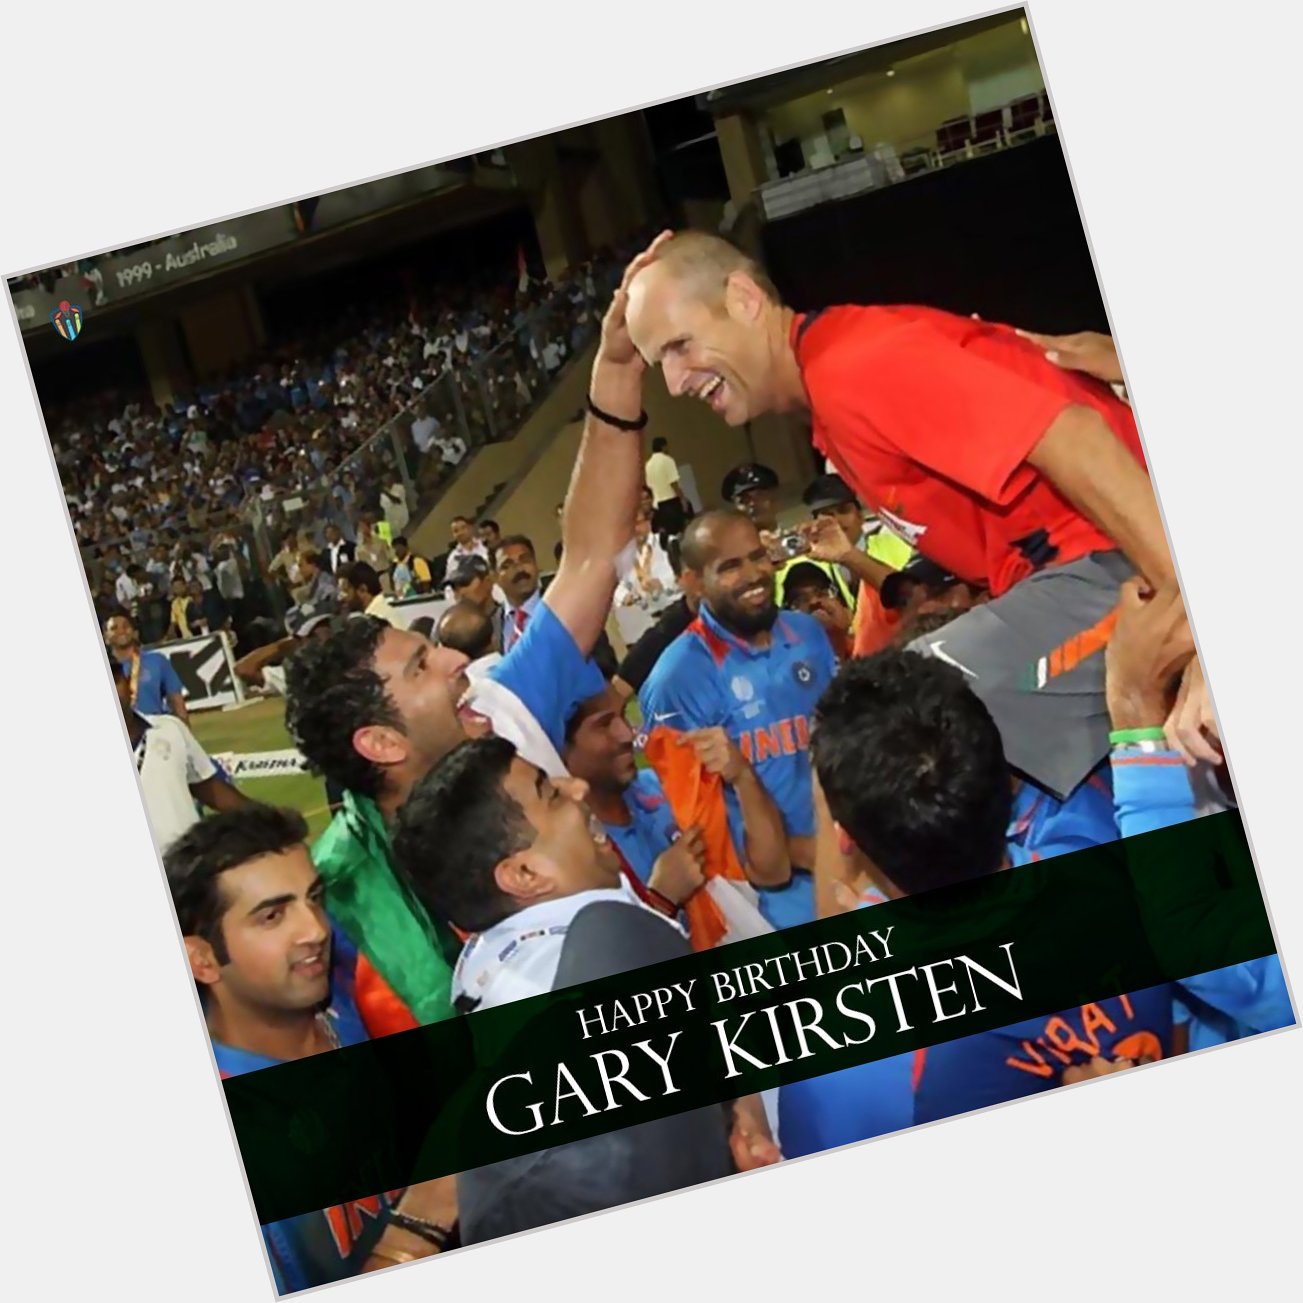 Happy birthday, Gary Kirsten. 